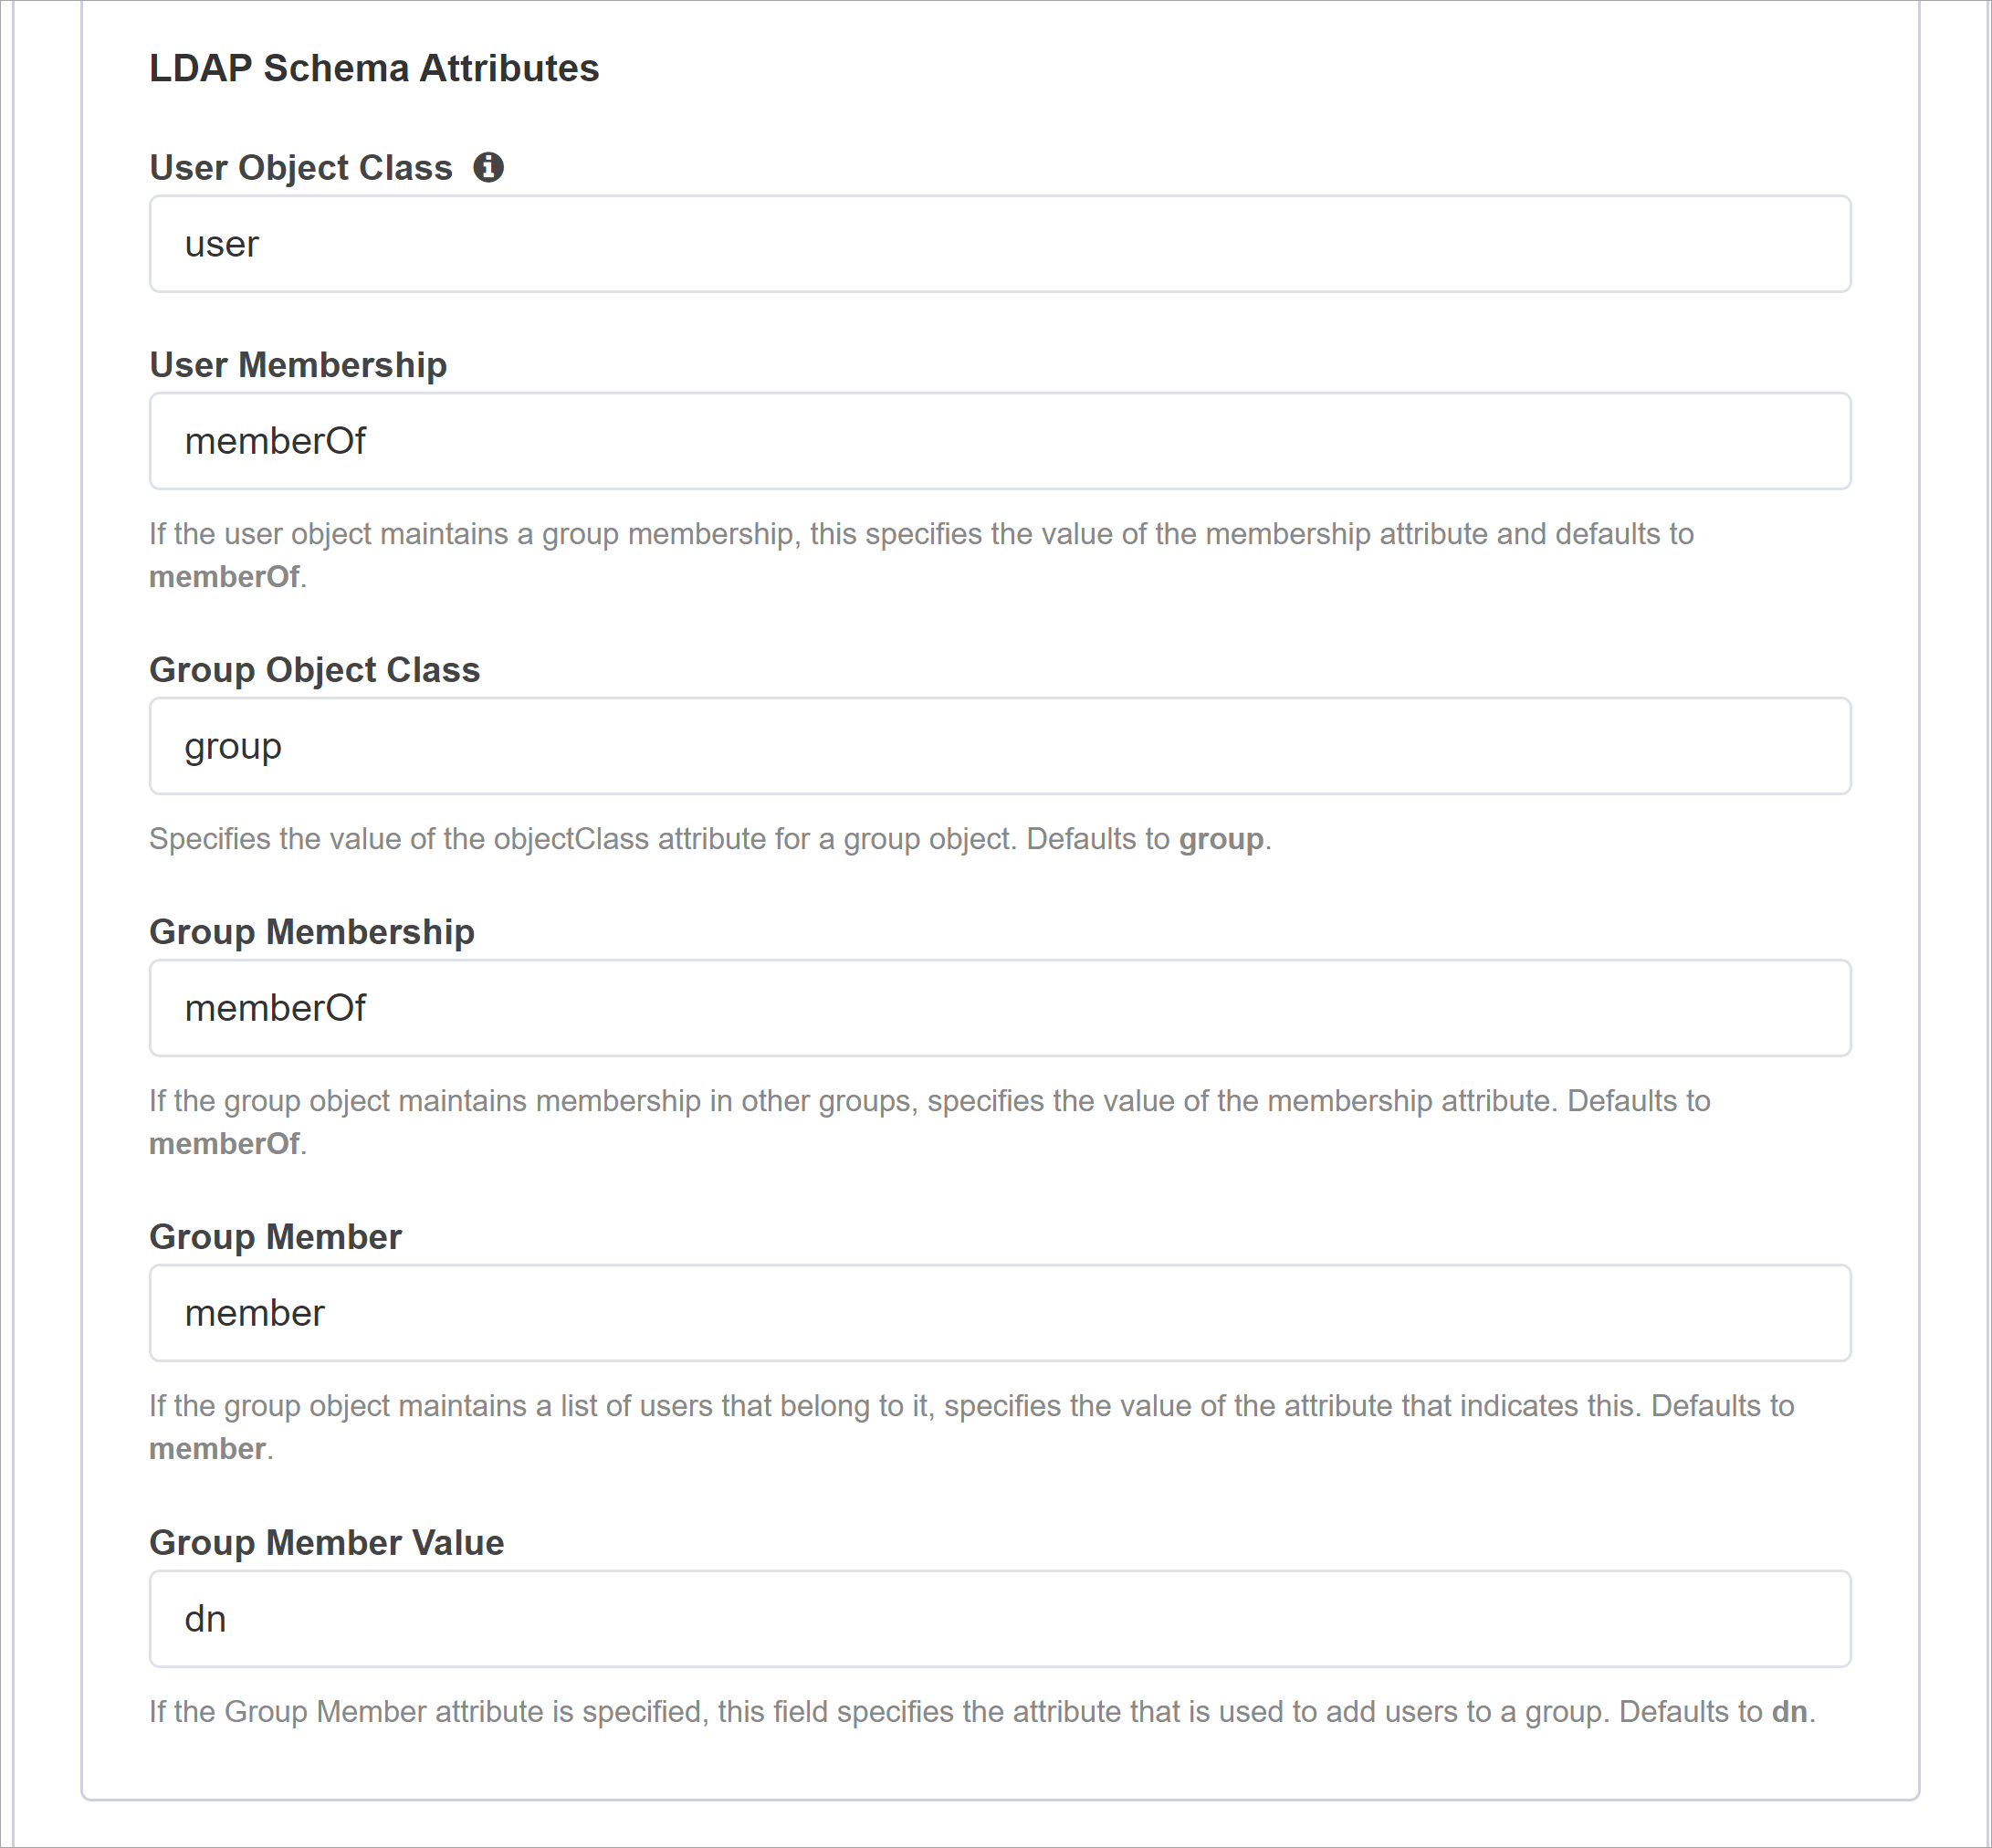 Снимок экрана: атрибуты схемы LDAP